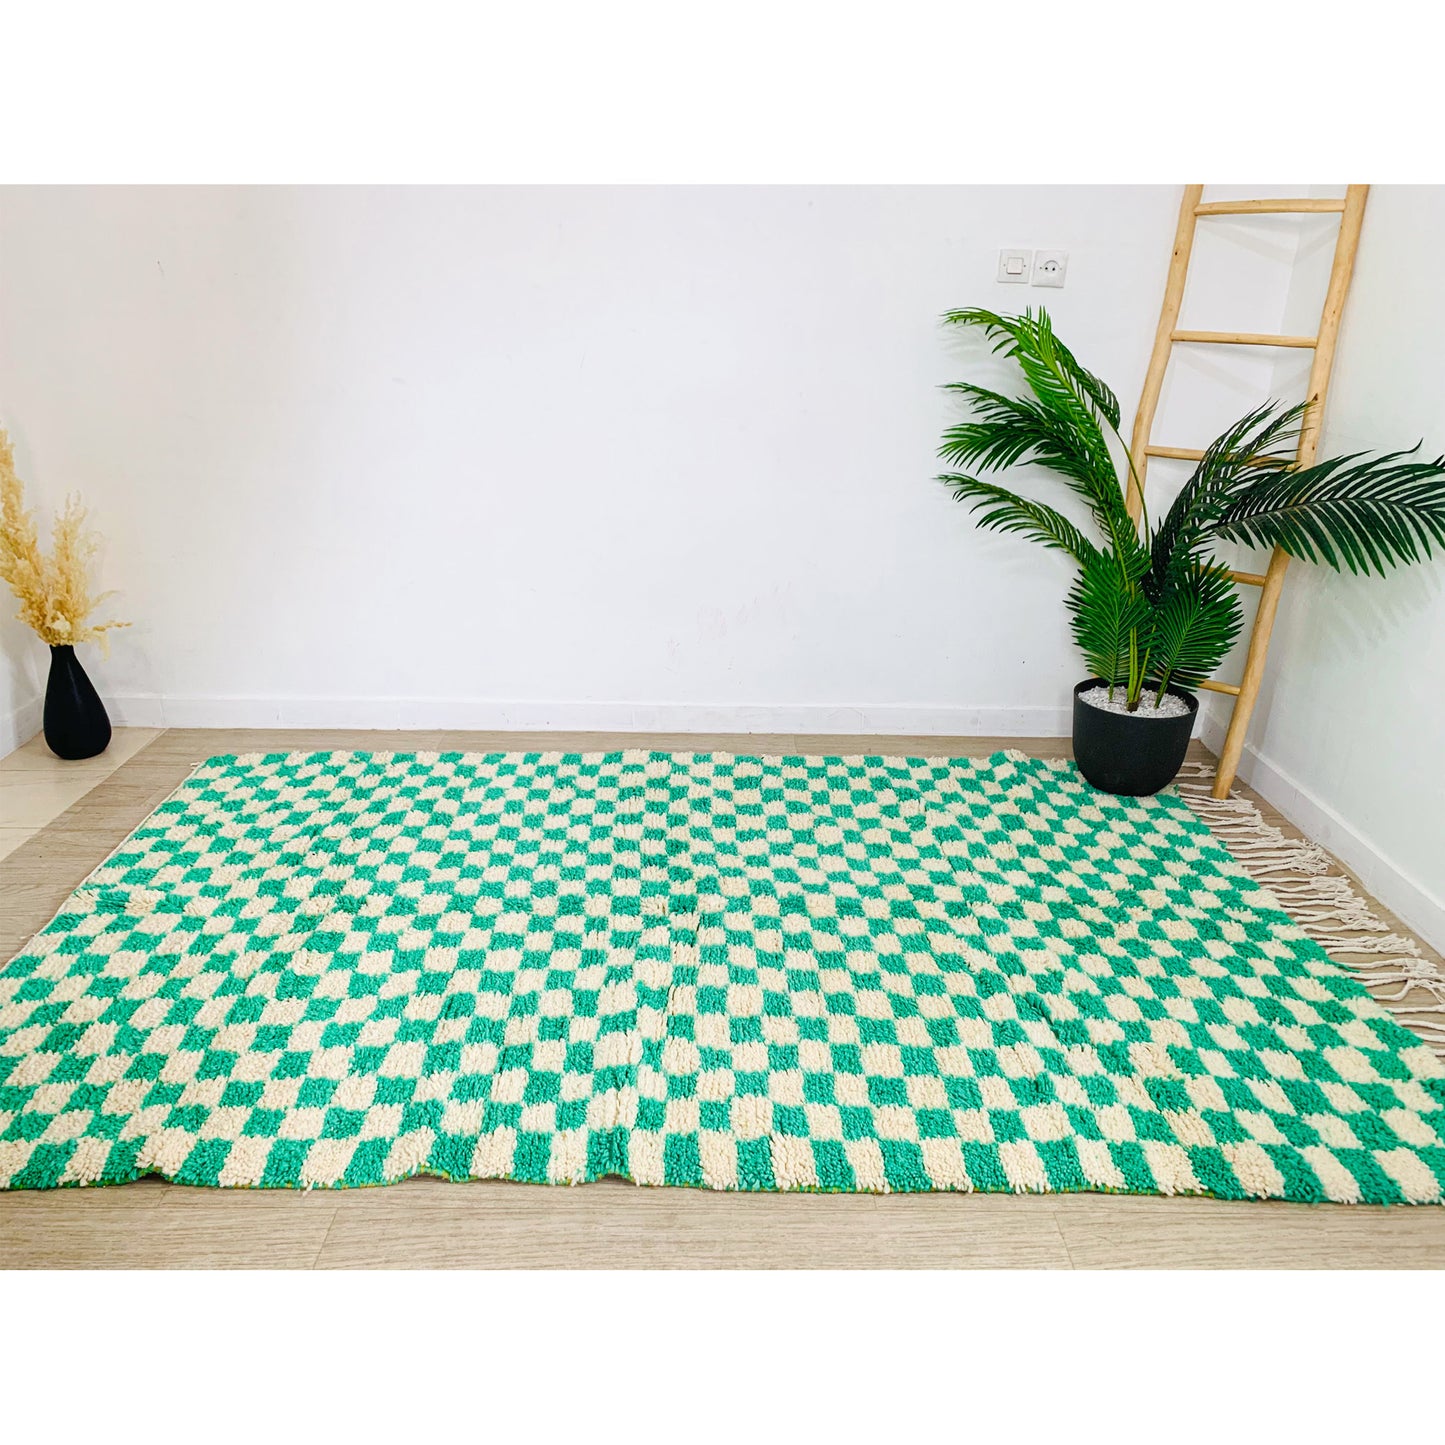 moroccan-green-checkered-rug